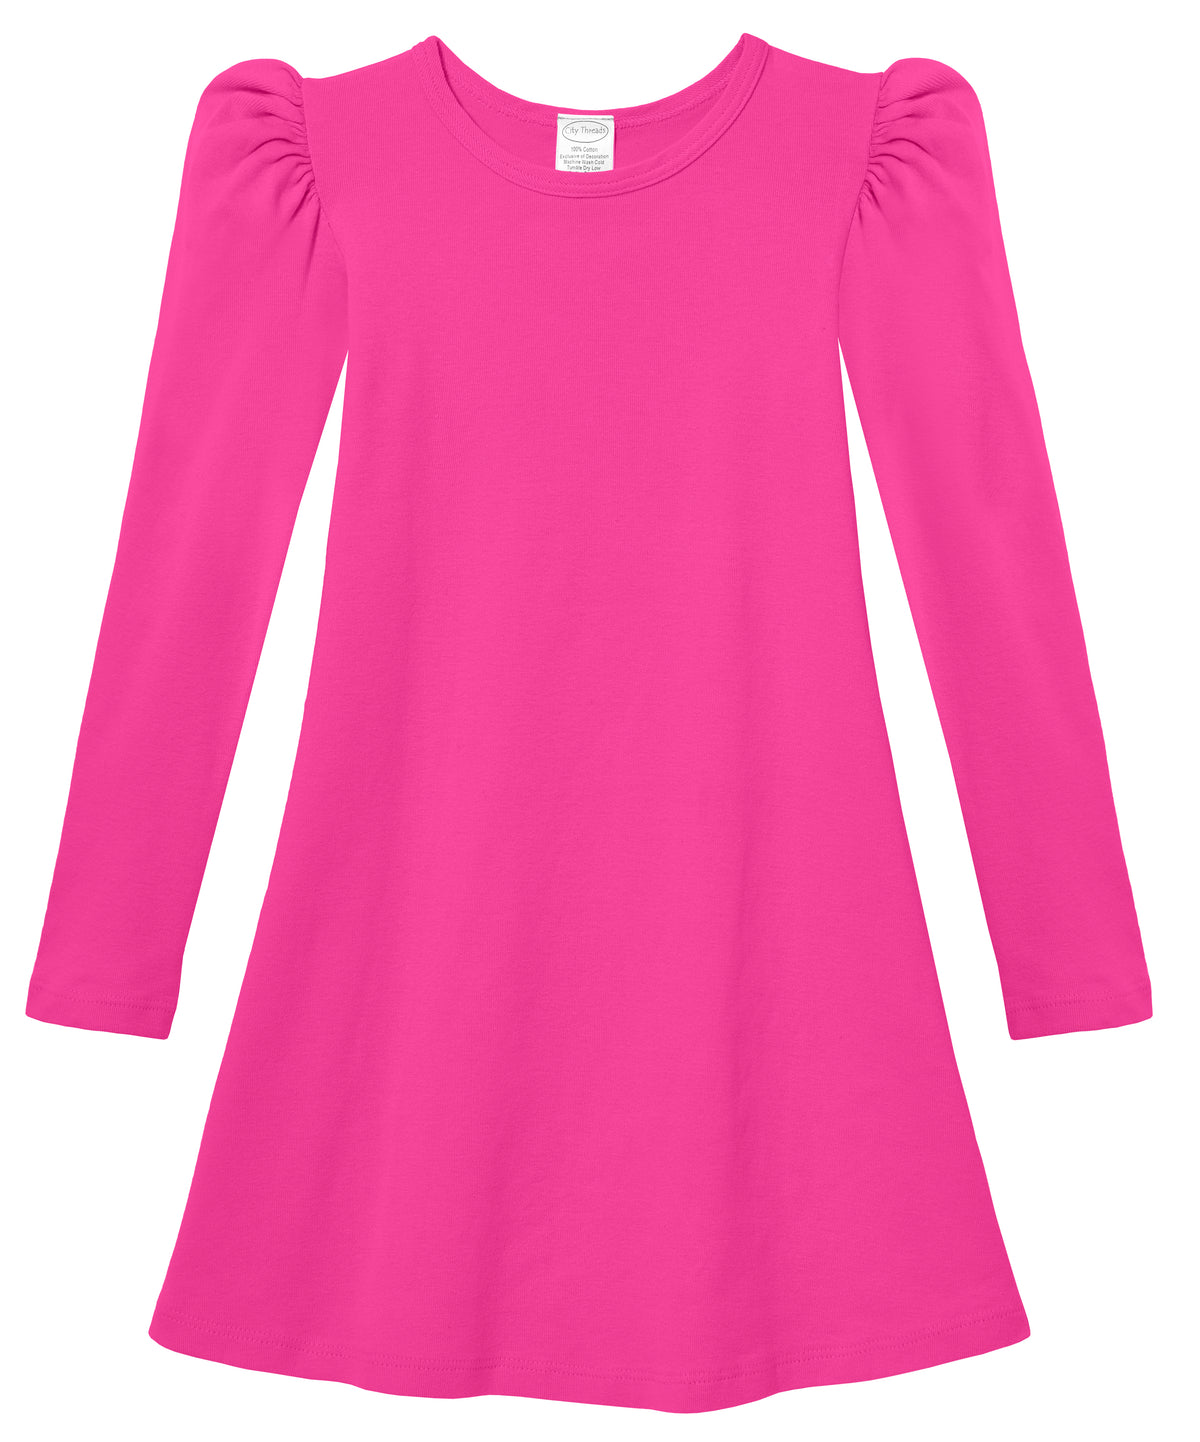 Girls Soft Cotton Puff Long Sleeve Dress | Hot Pink